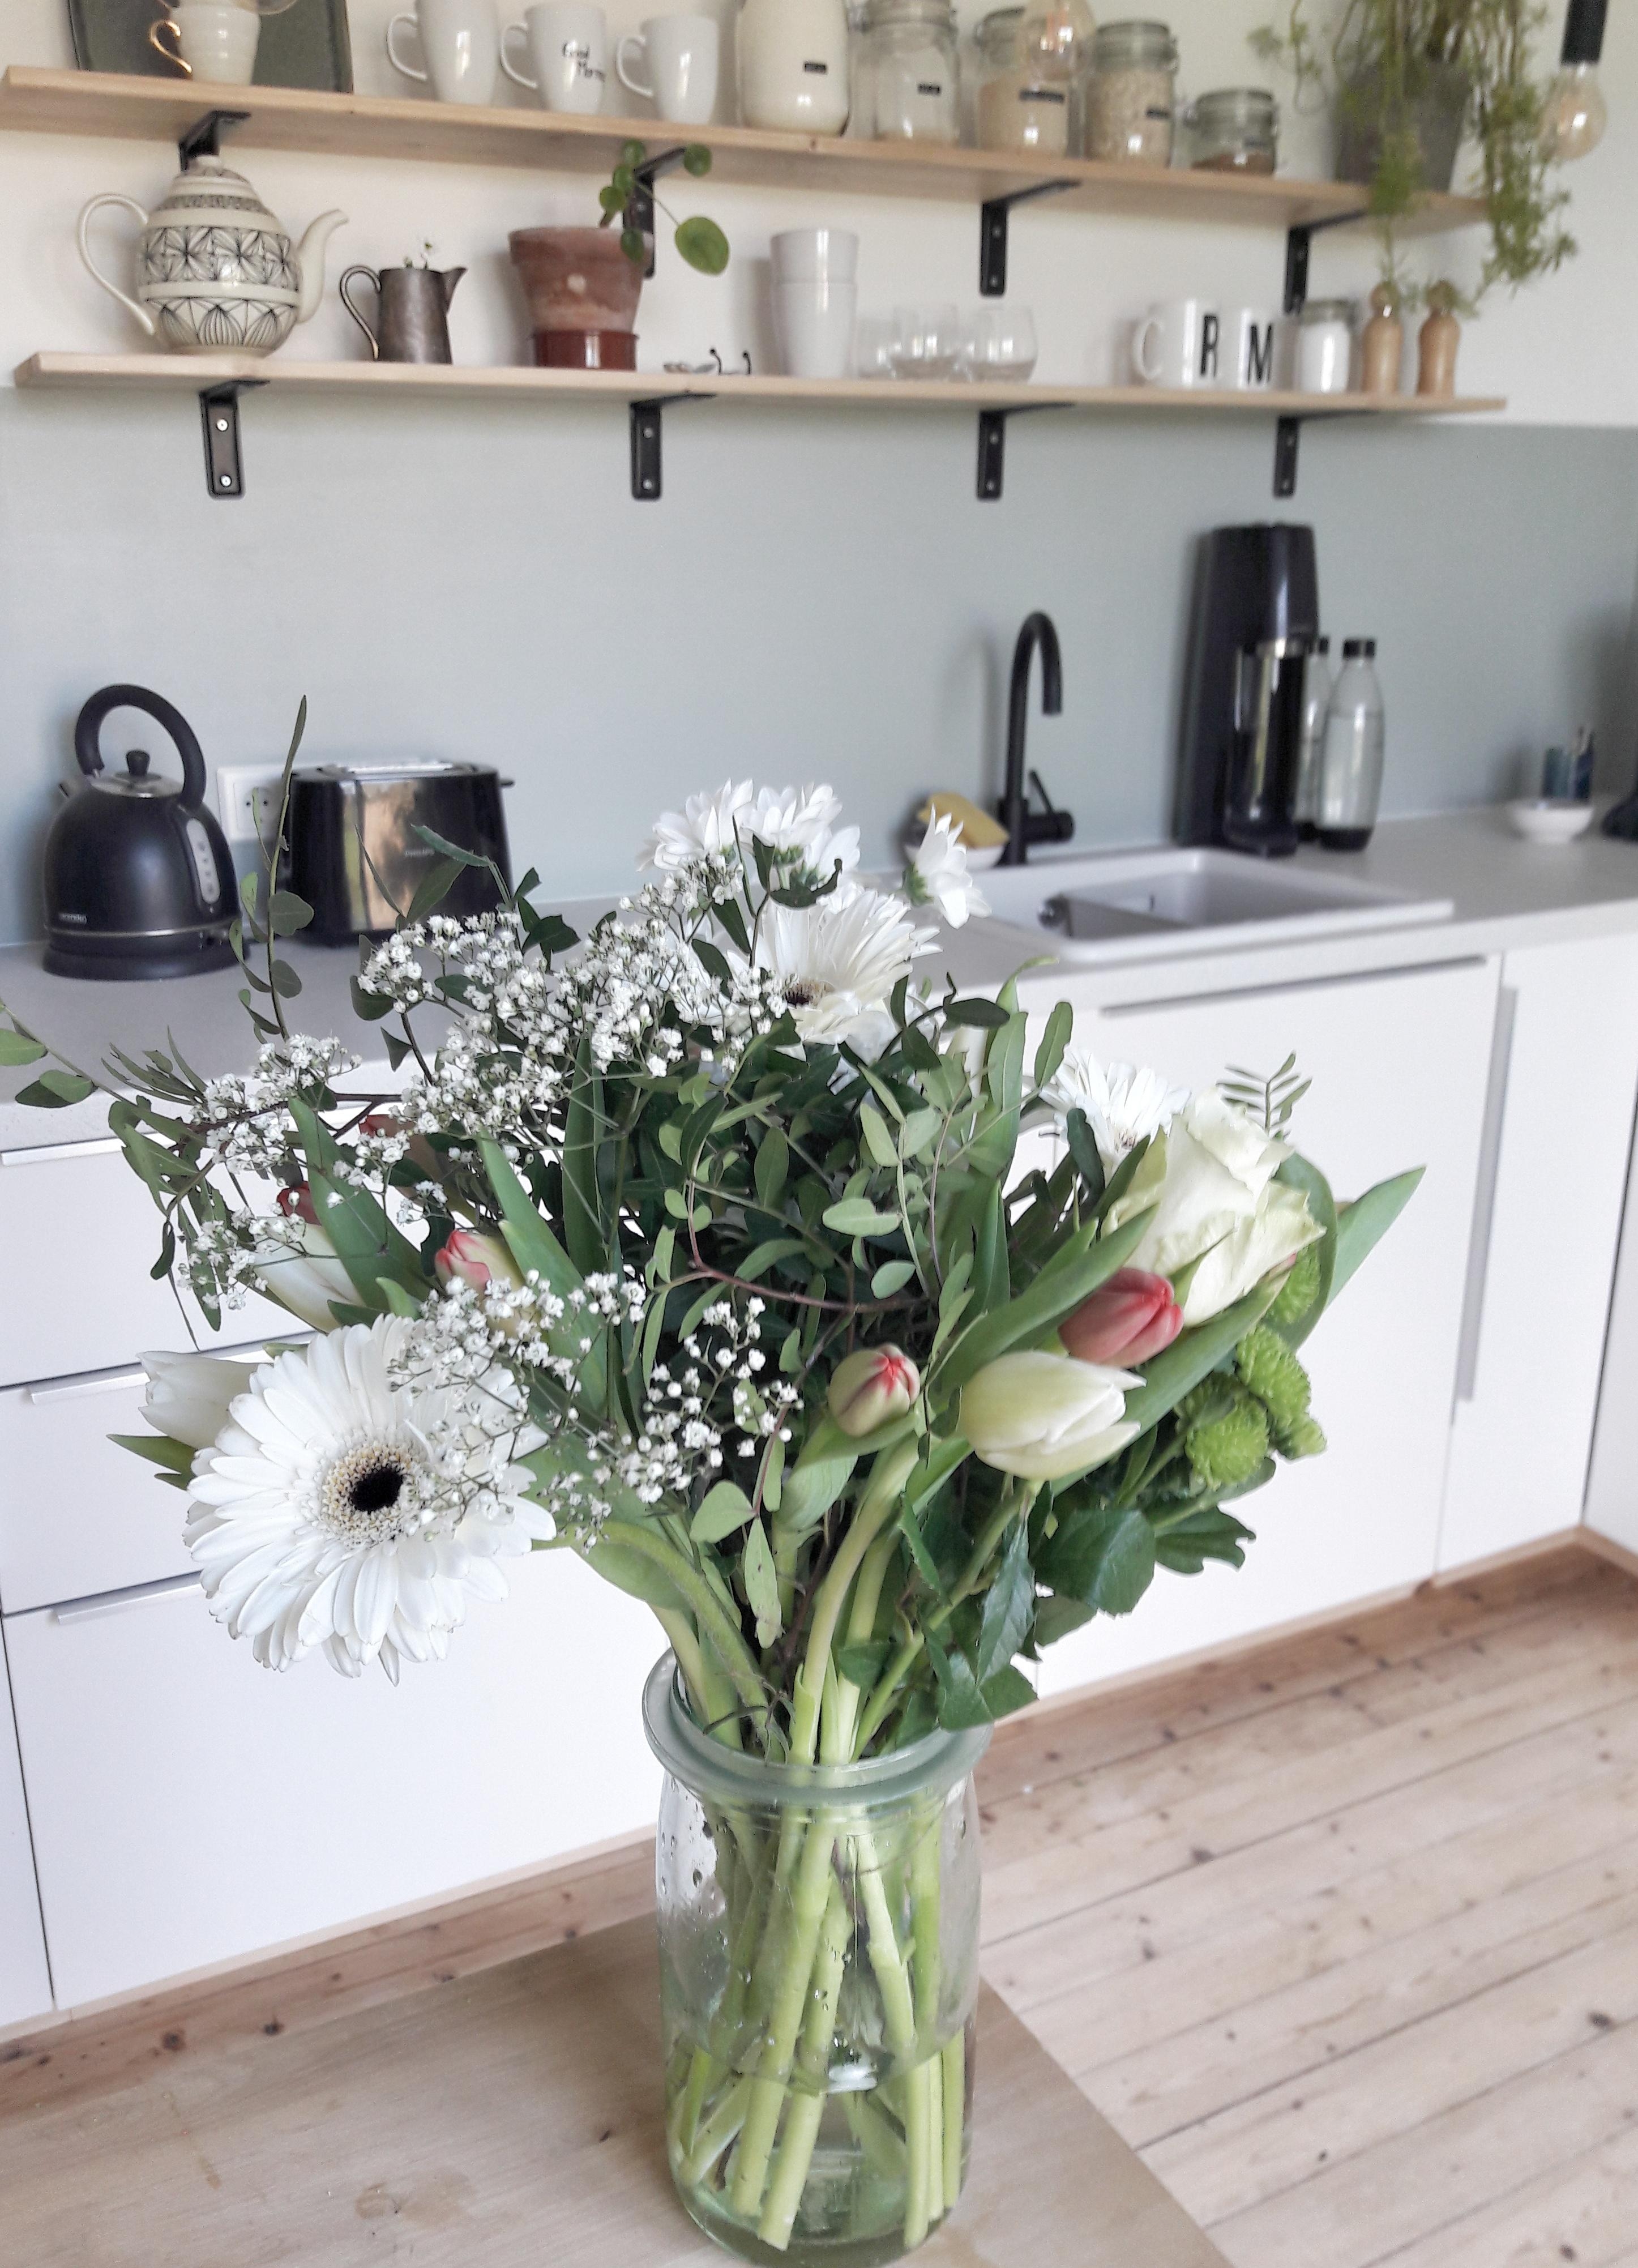 Dieser Blumenstrauß versüßt mir heute neben dem tollen Wetter den Tag 
#freshflowerfriday #scandihome #kitchen #sunny 